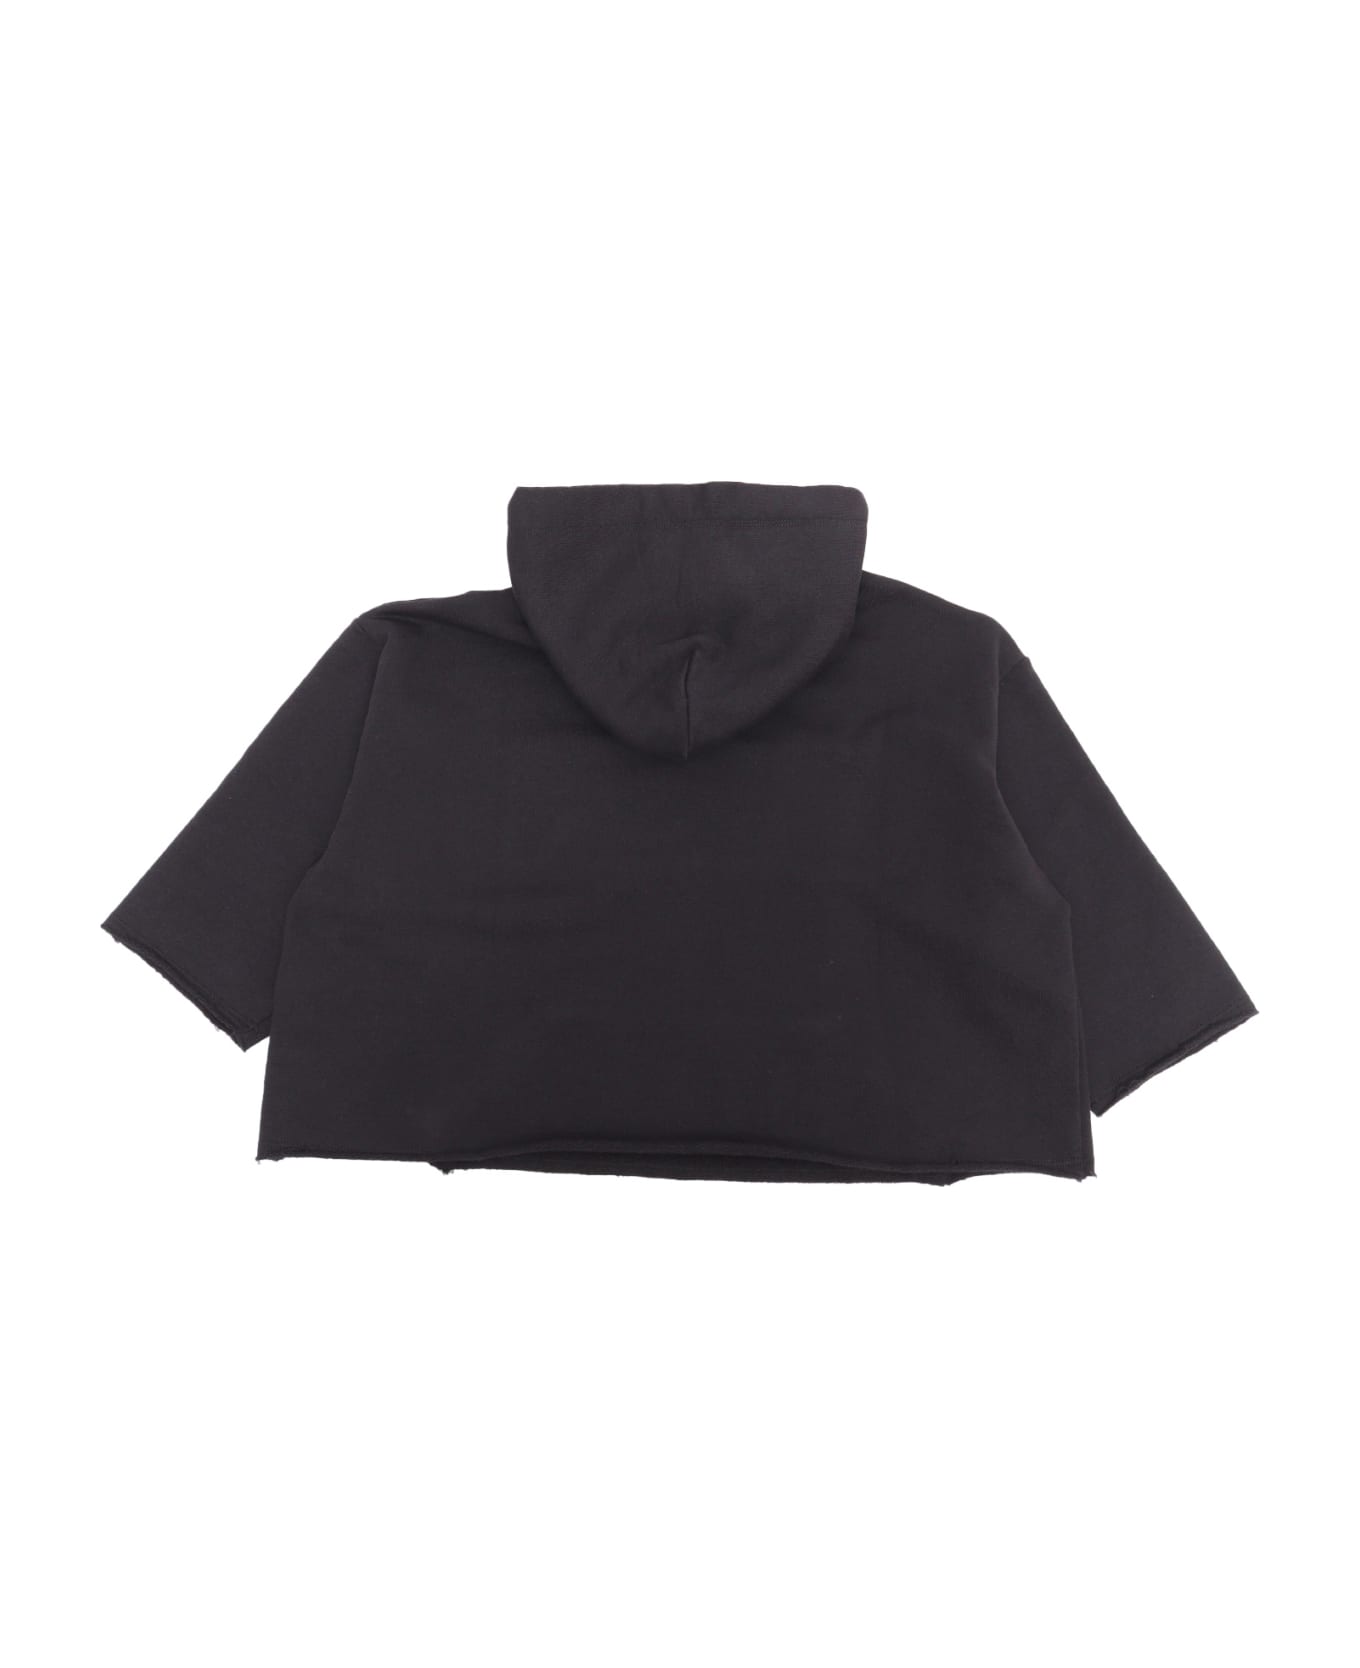 MM6 Maison Margiela Black Cropped Sweatshirt - BLACK